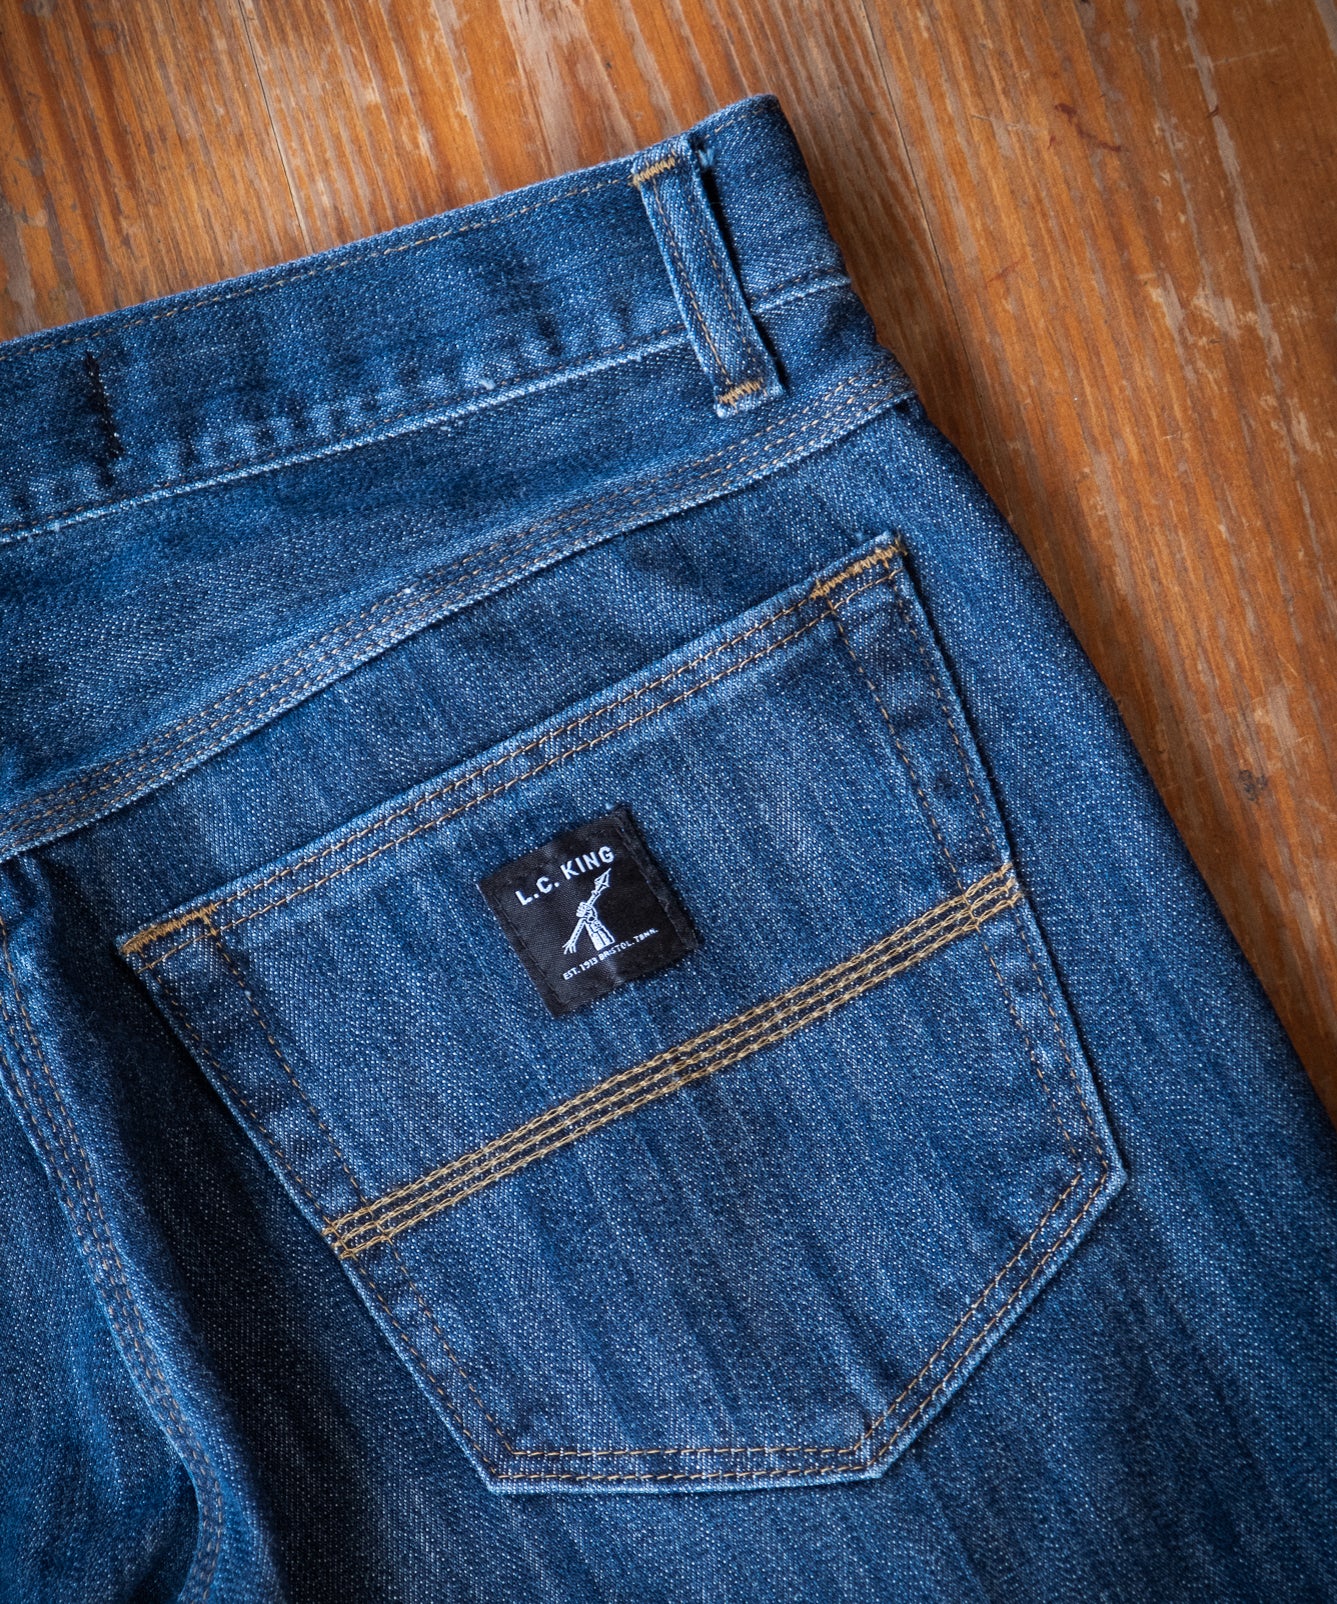 New Washed Denim 5 Pocket Jean